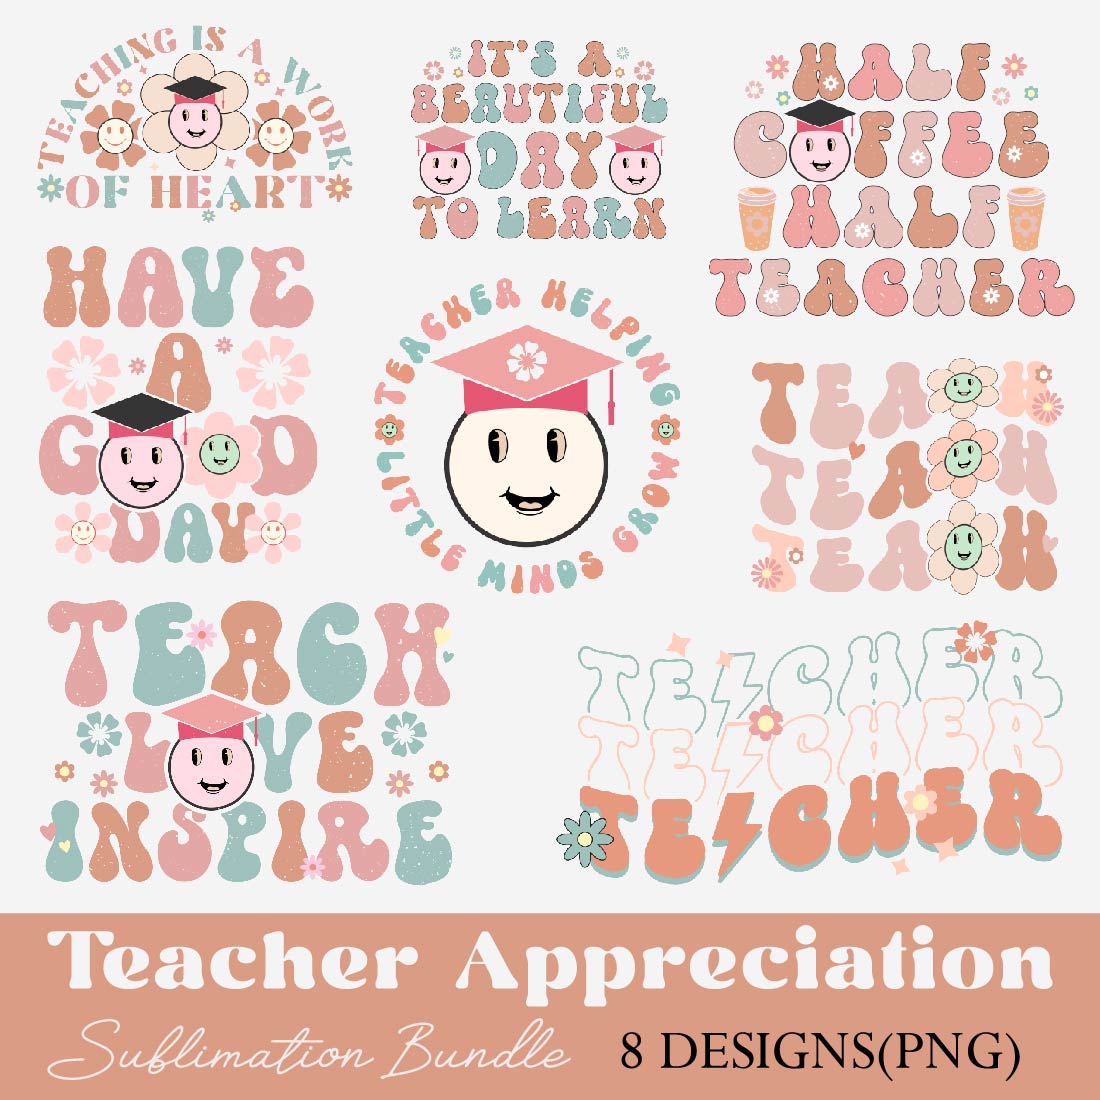 Best Teacher Sublimation Bundle cover image.